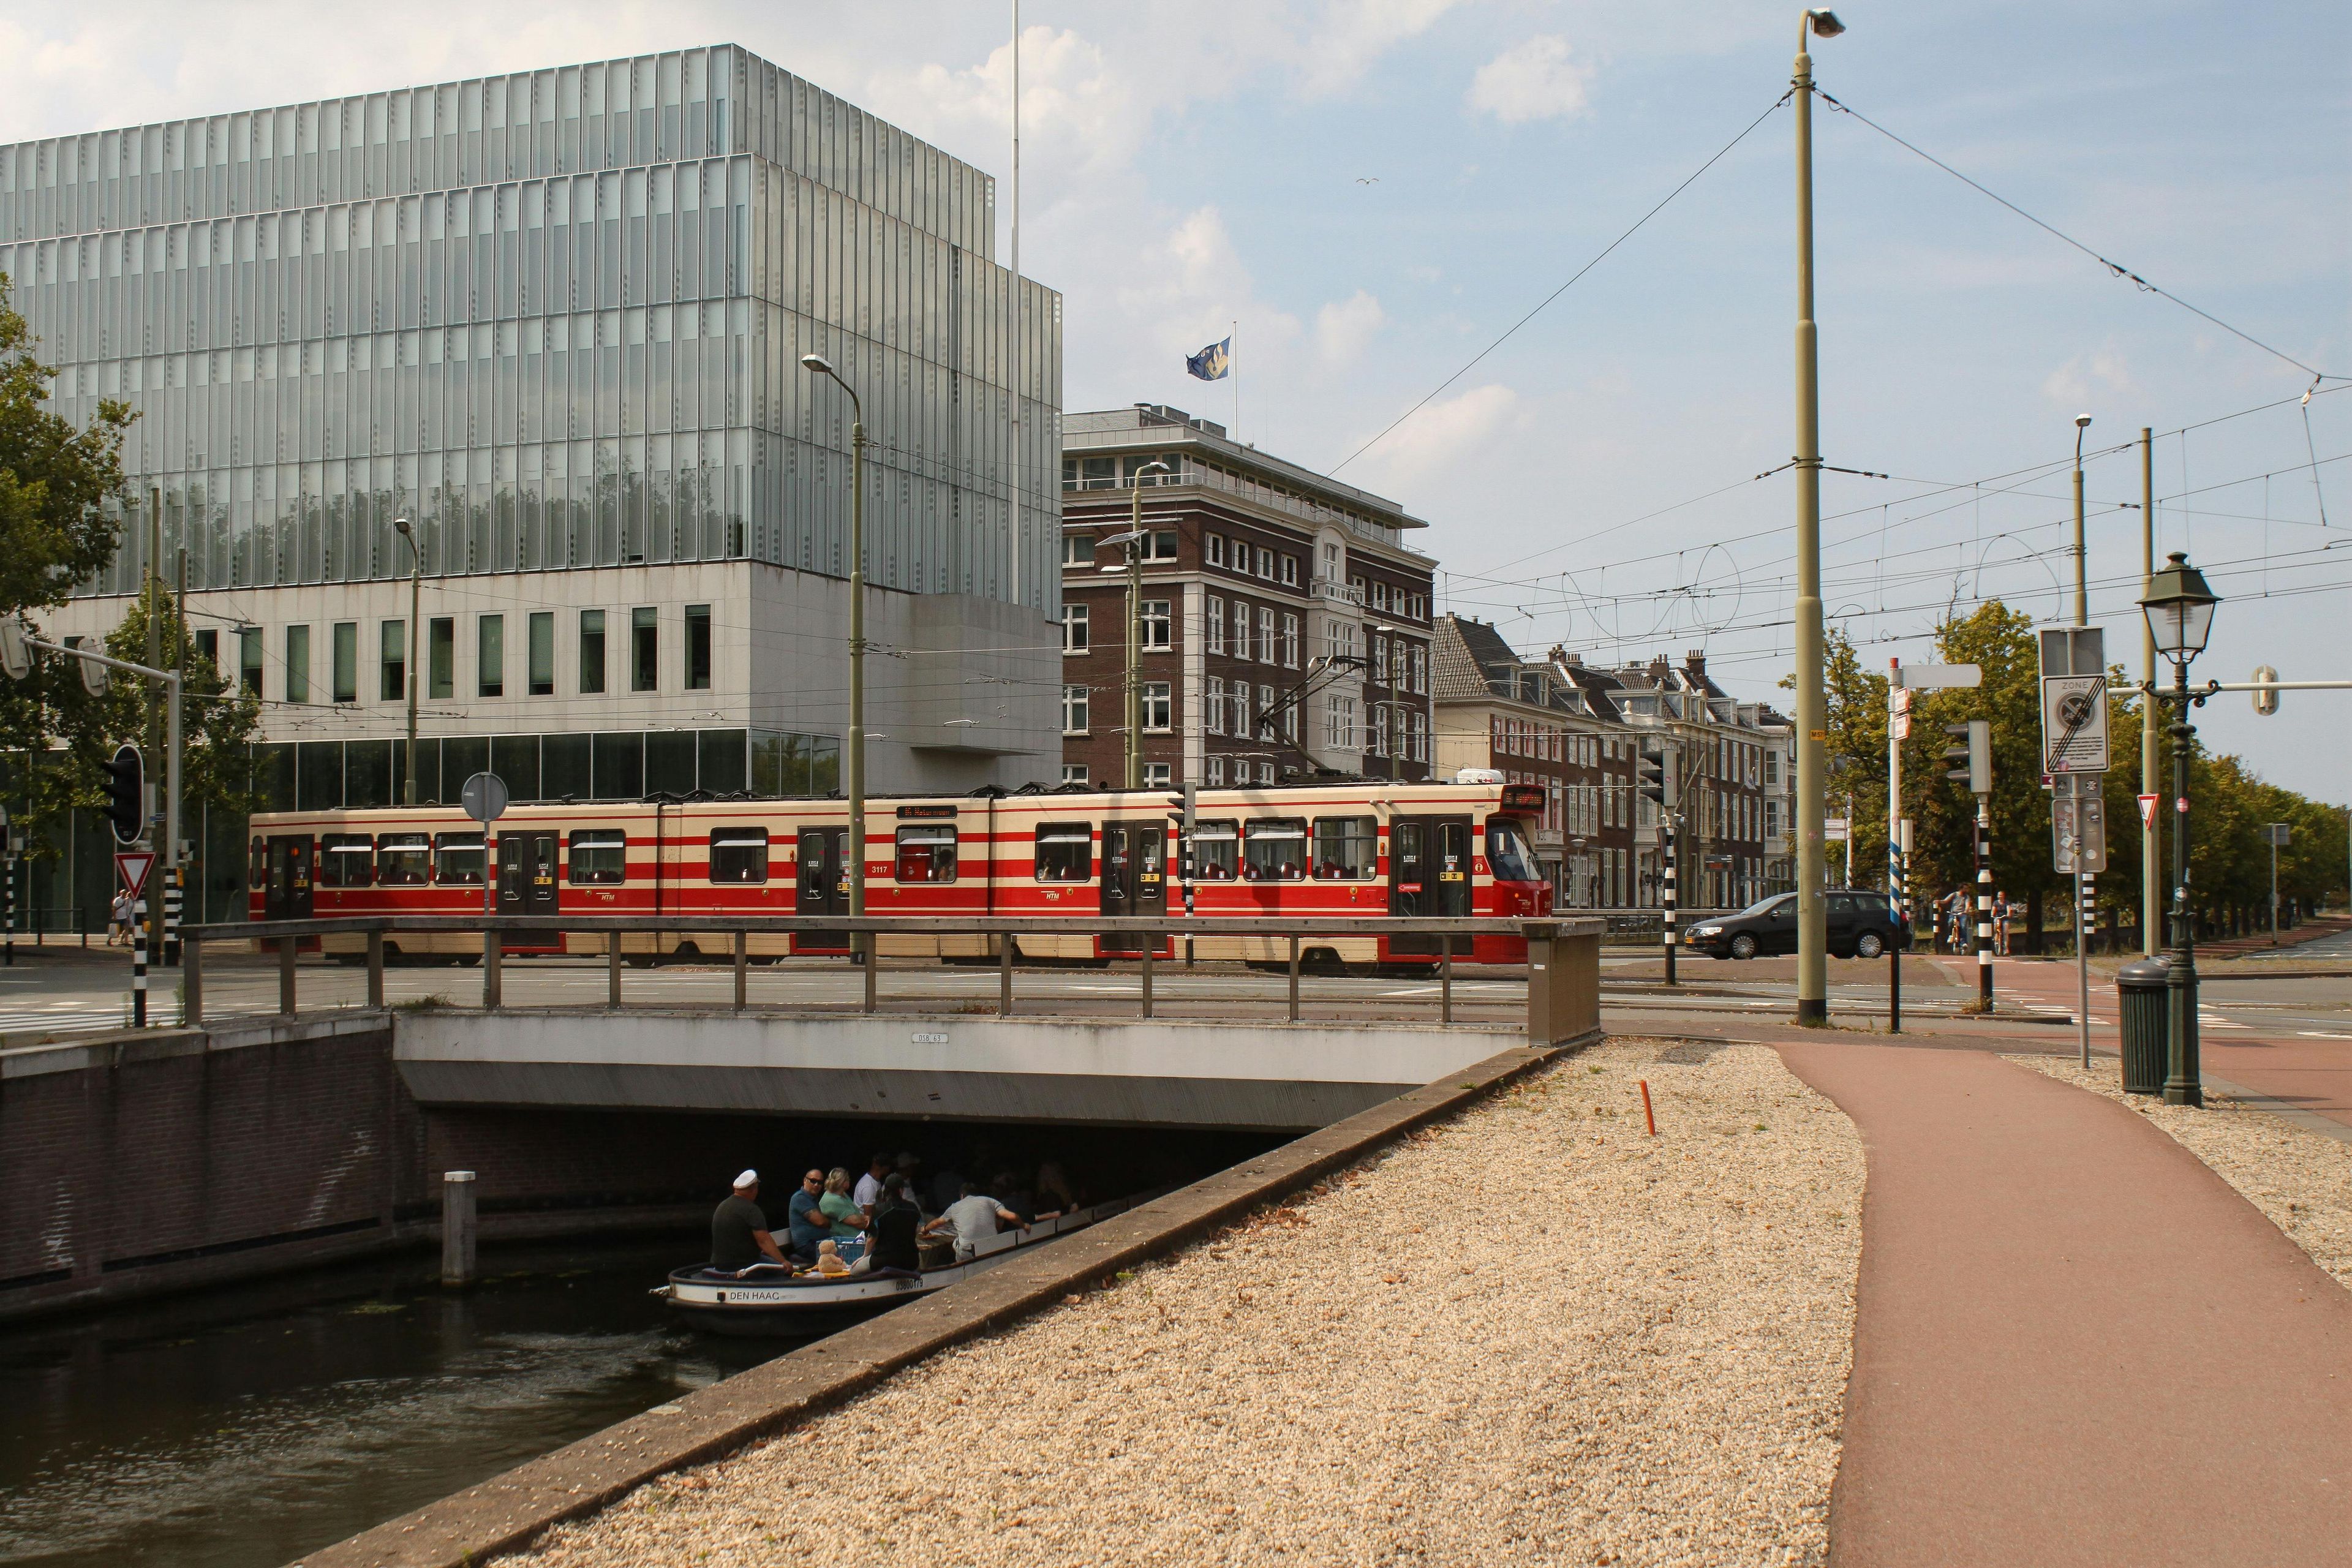 Imagen del tour: Boleto de transporte público de 1 día HTM de La Haya